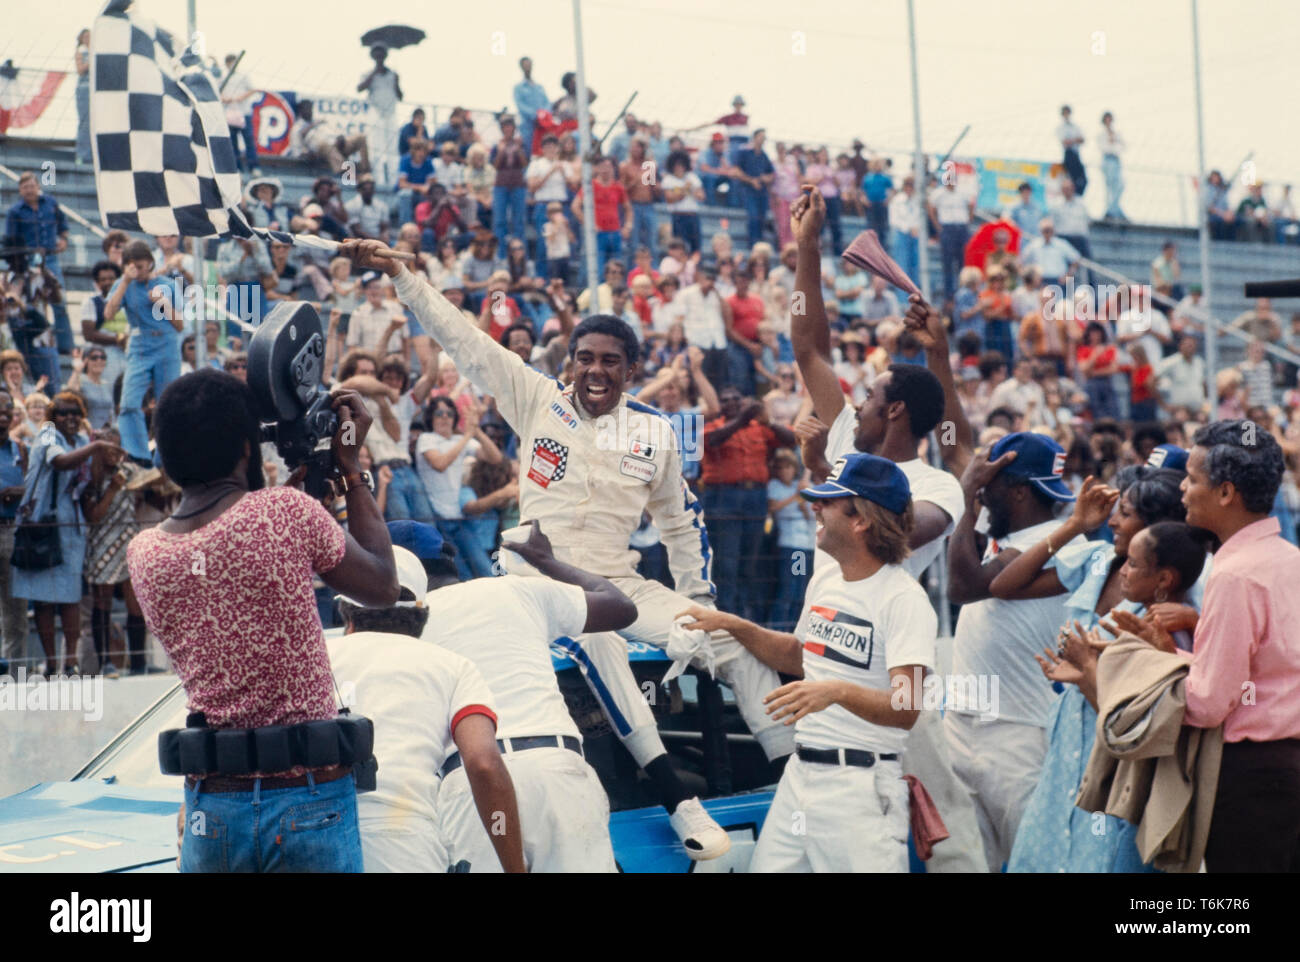 Il comico/attore Richard Pryor sul set di un lungometraggio film chiamato fulmine ingrassato , la storia del primo americano africano NASCAR driver - Wendell Scott - a vincere una gara NASCAR. Foto Stock